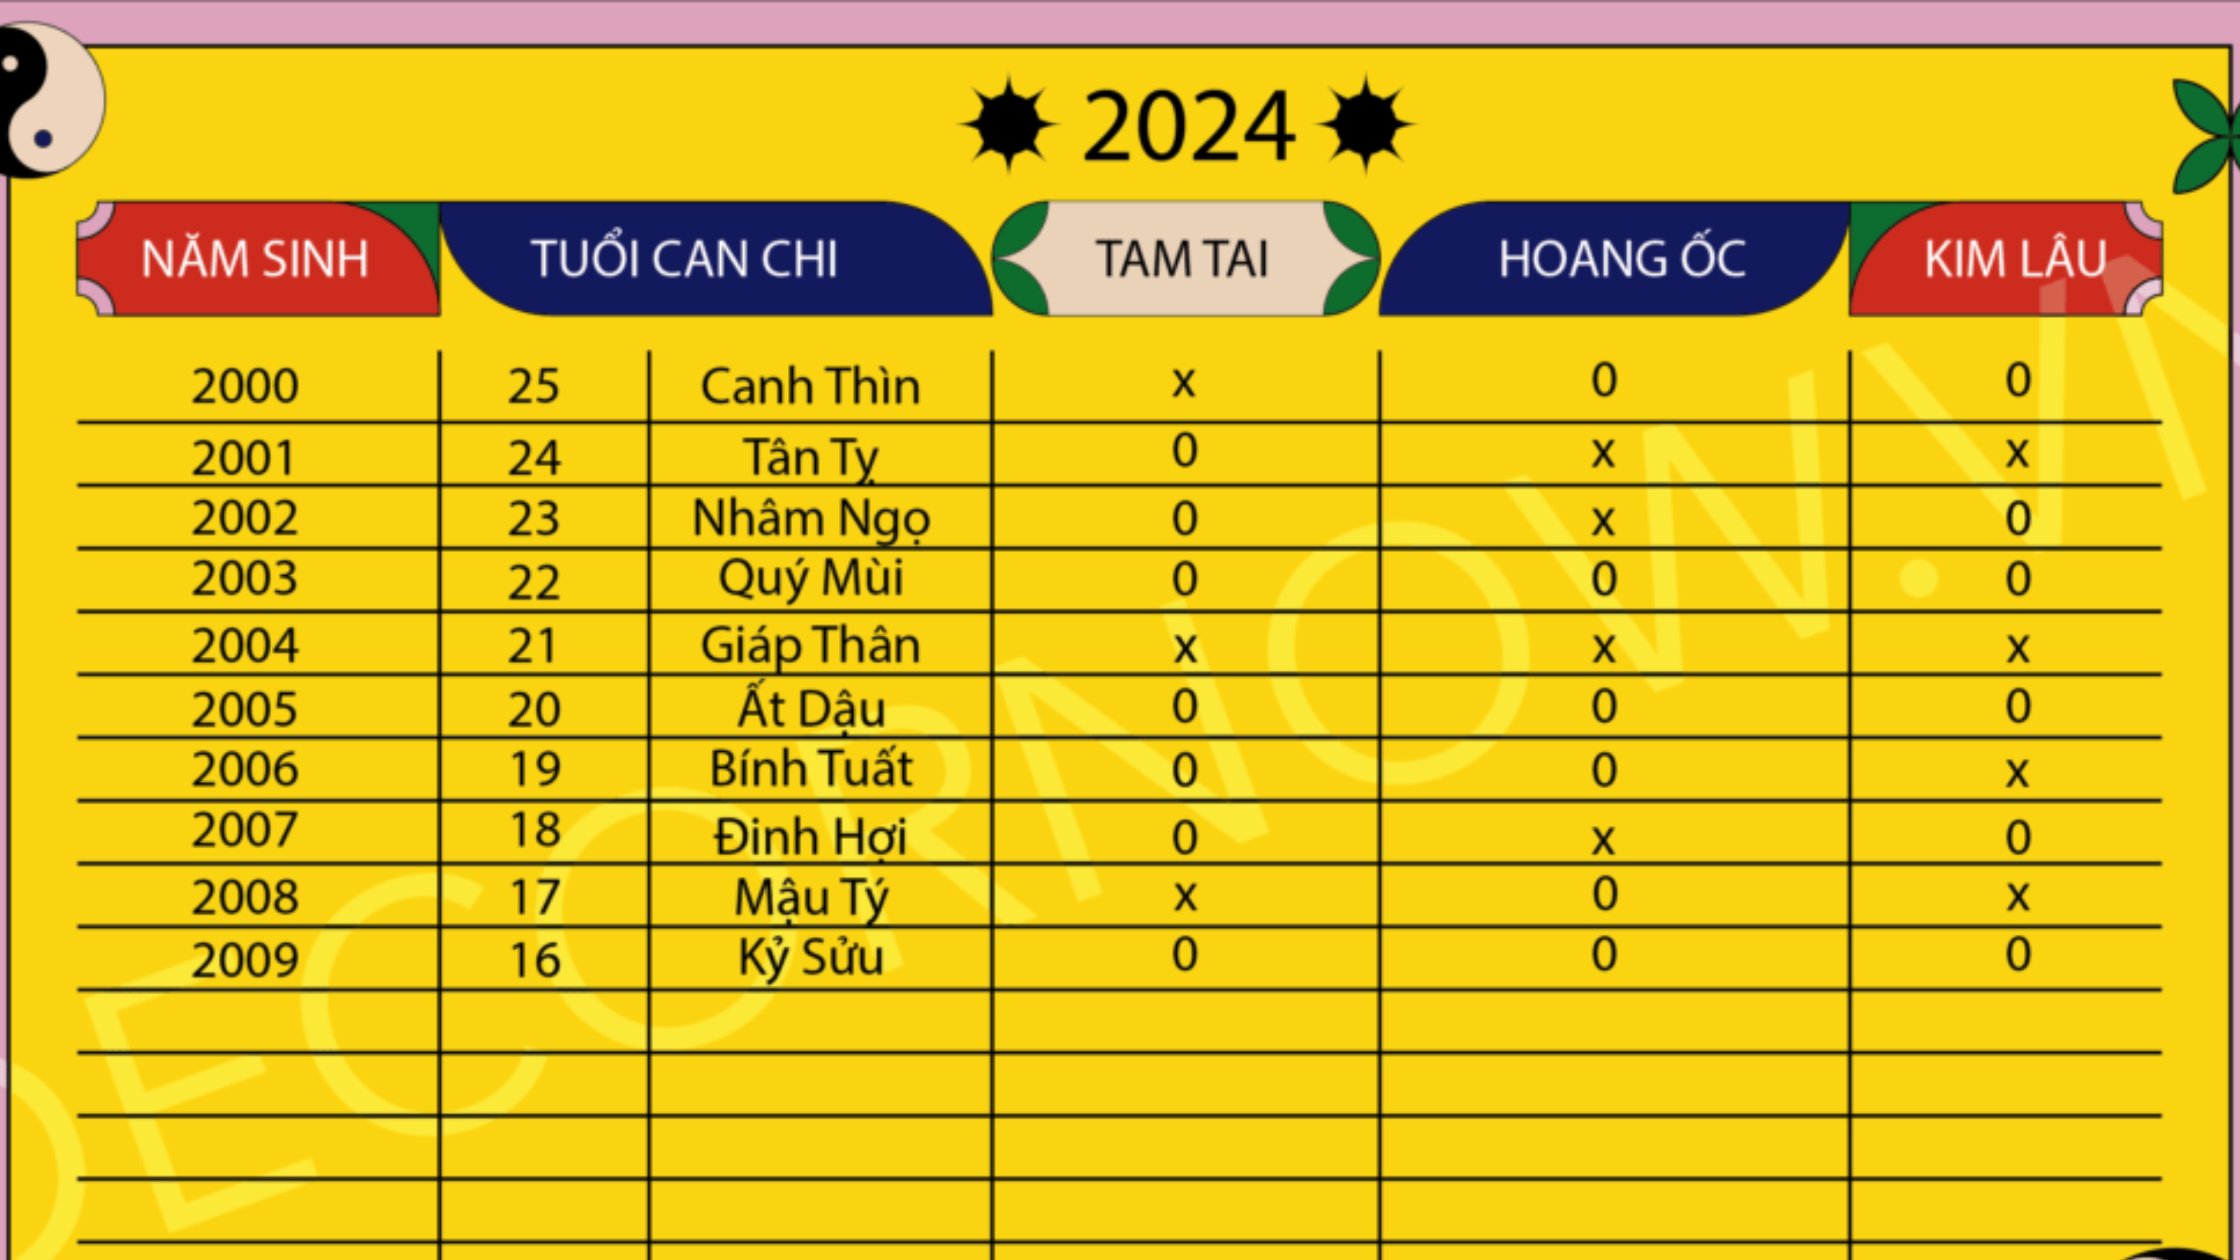 T 2000 2009  Bng tra hn Tam Tai Kim Lu Hoang c 2024